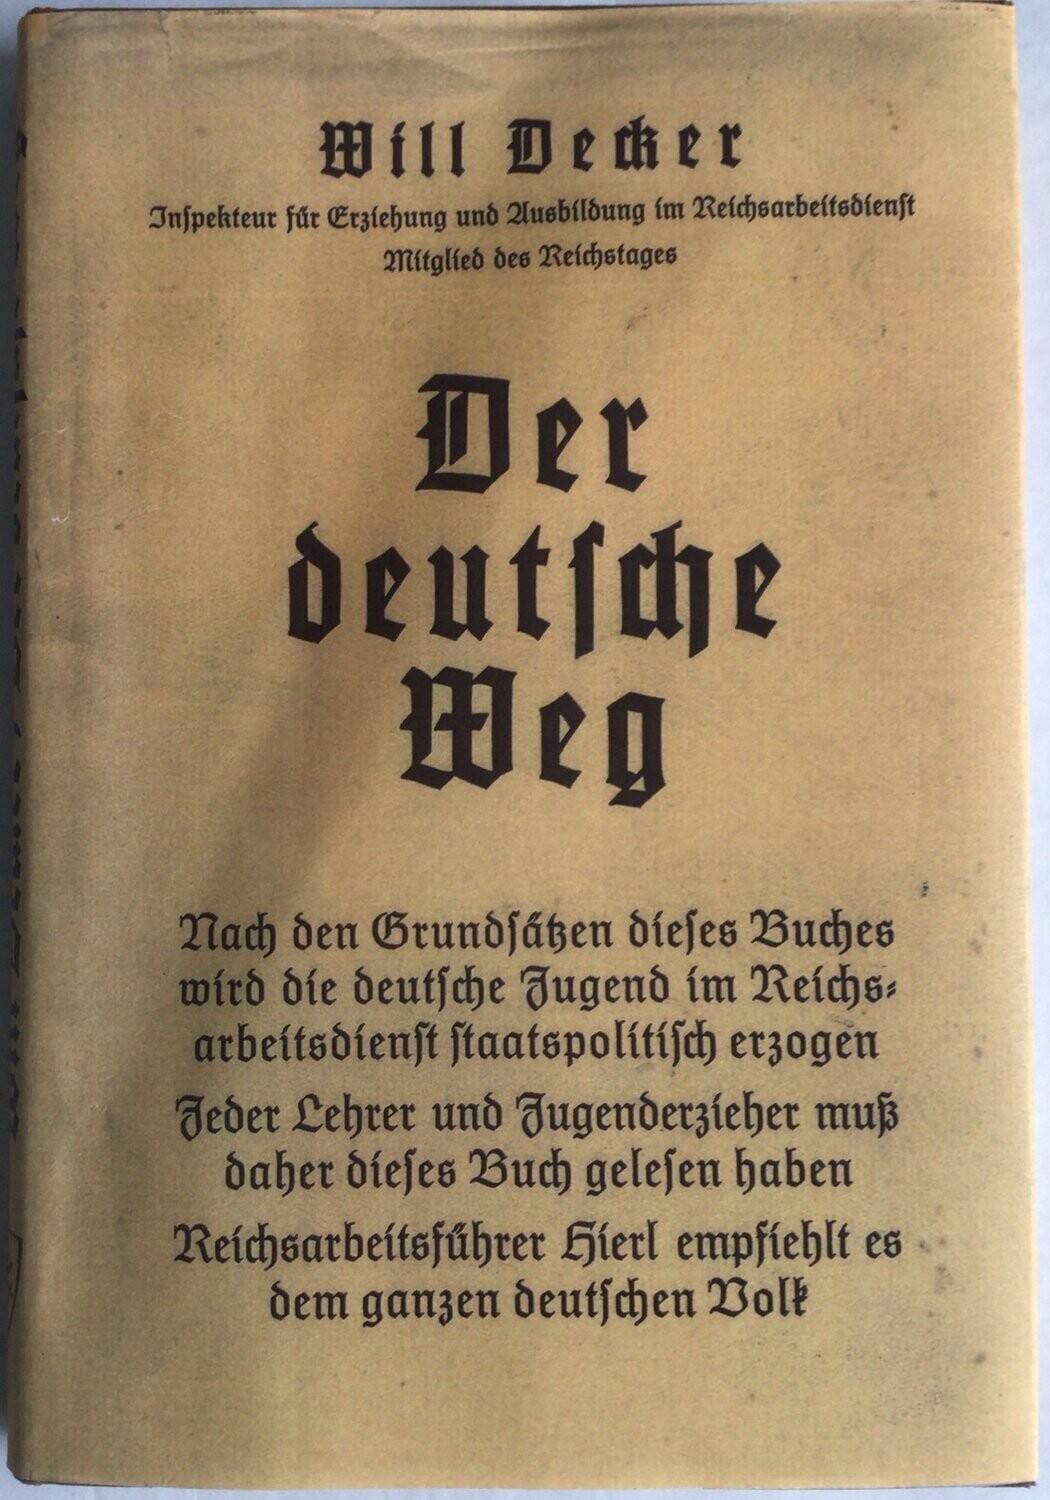 Decker: Der deutsche Weg - Ganzleinenausgabe (Erstauflage) aus dem Jahr 1933 mit Schutzumschlag (Kopie)